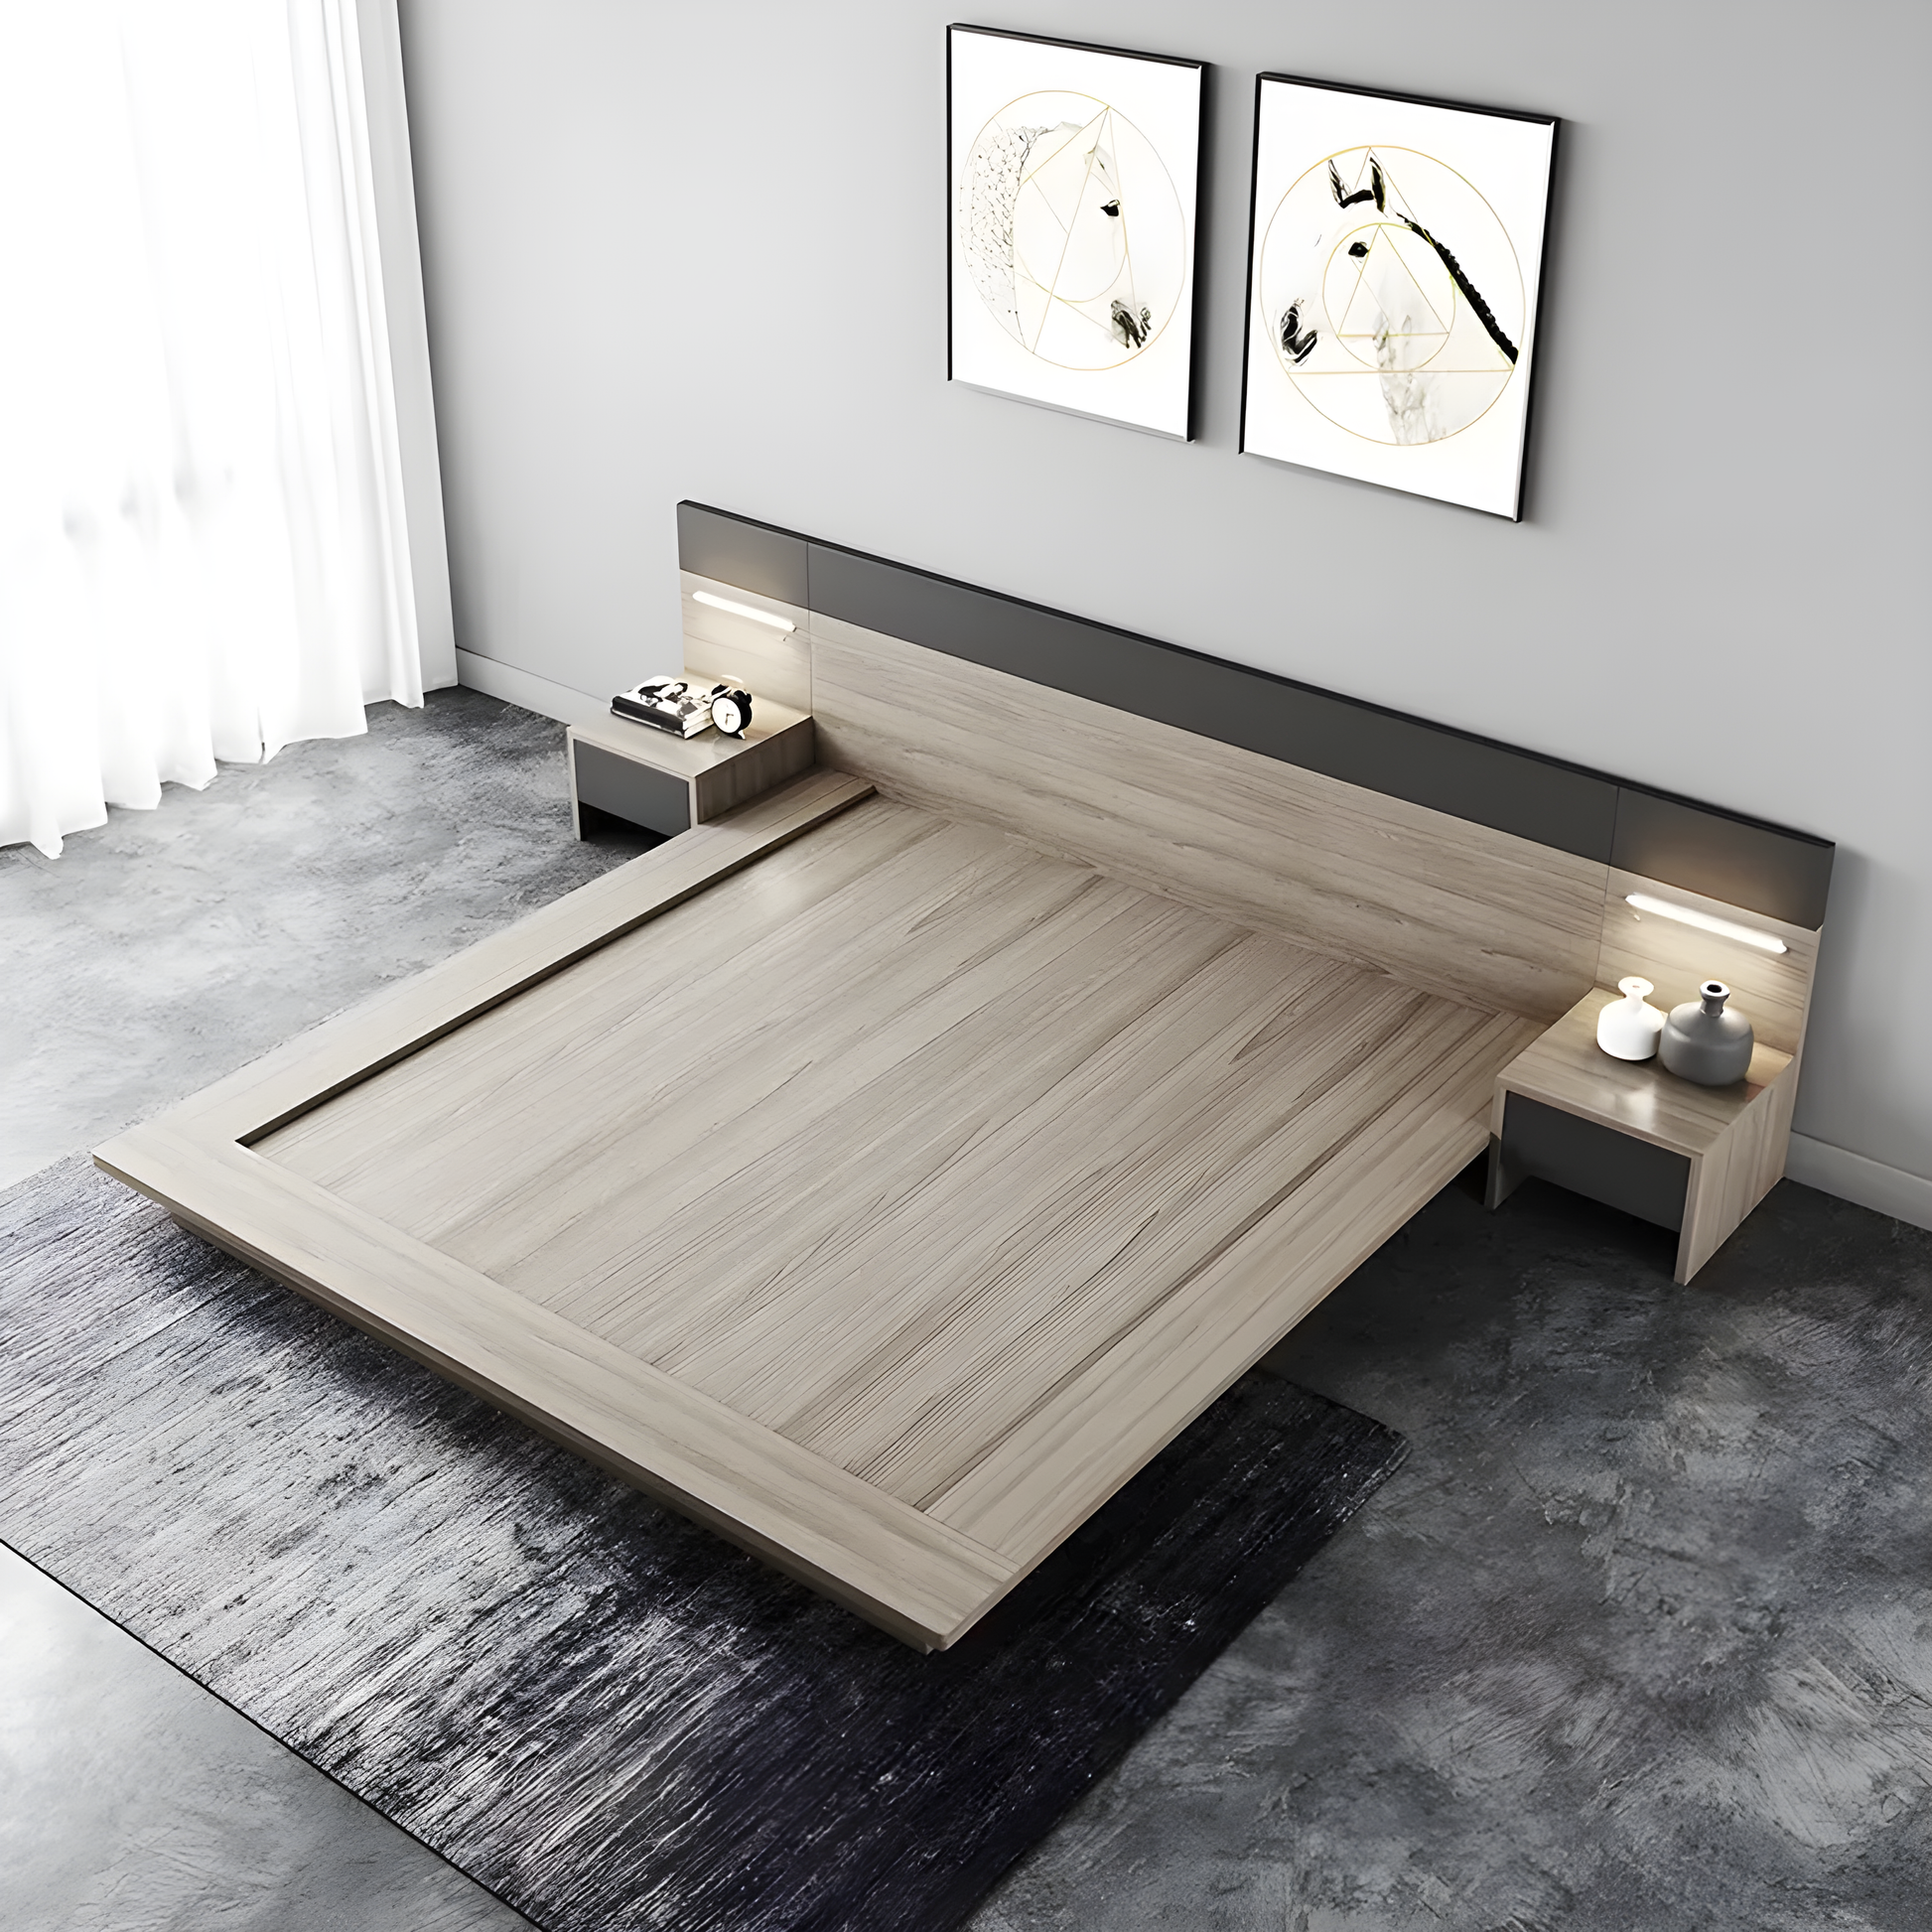 Aiken Japanese Bed